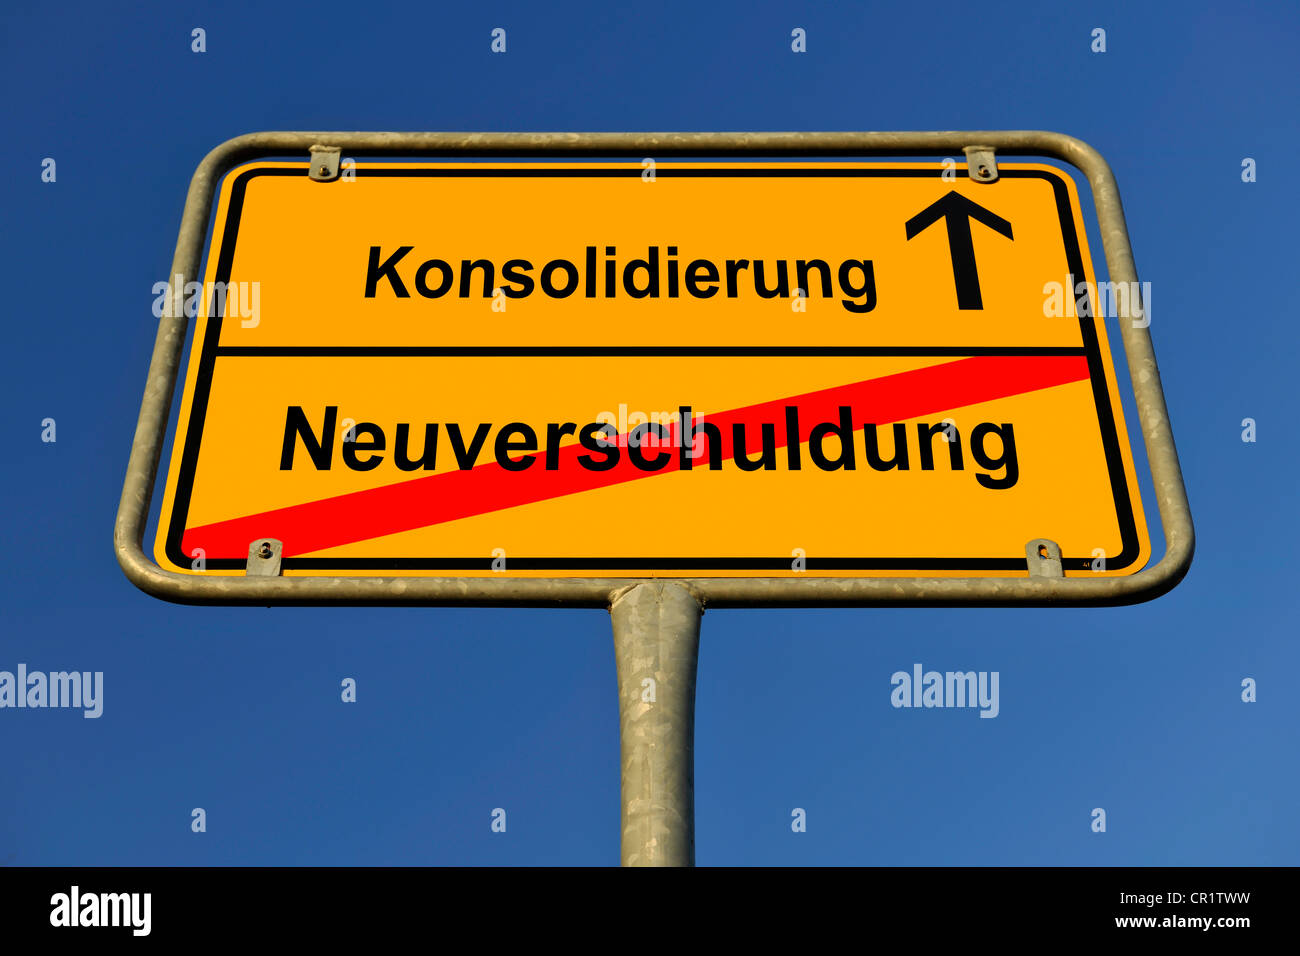 Town city, città limiti, Konsolidierung e Neuverschuldung, tedesco per il consolidamento e il nuovo indebitamento, immagine simbolica per Foto Stock